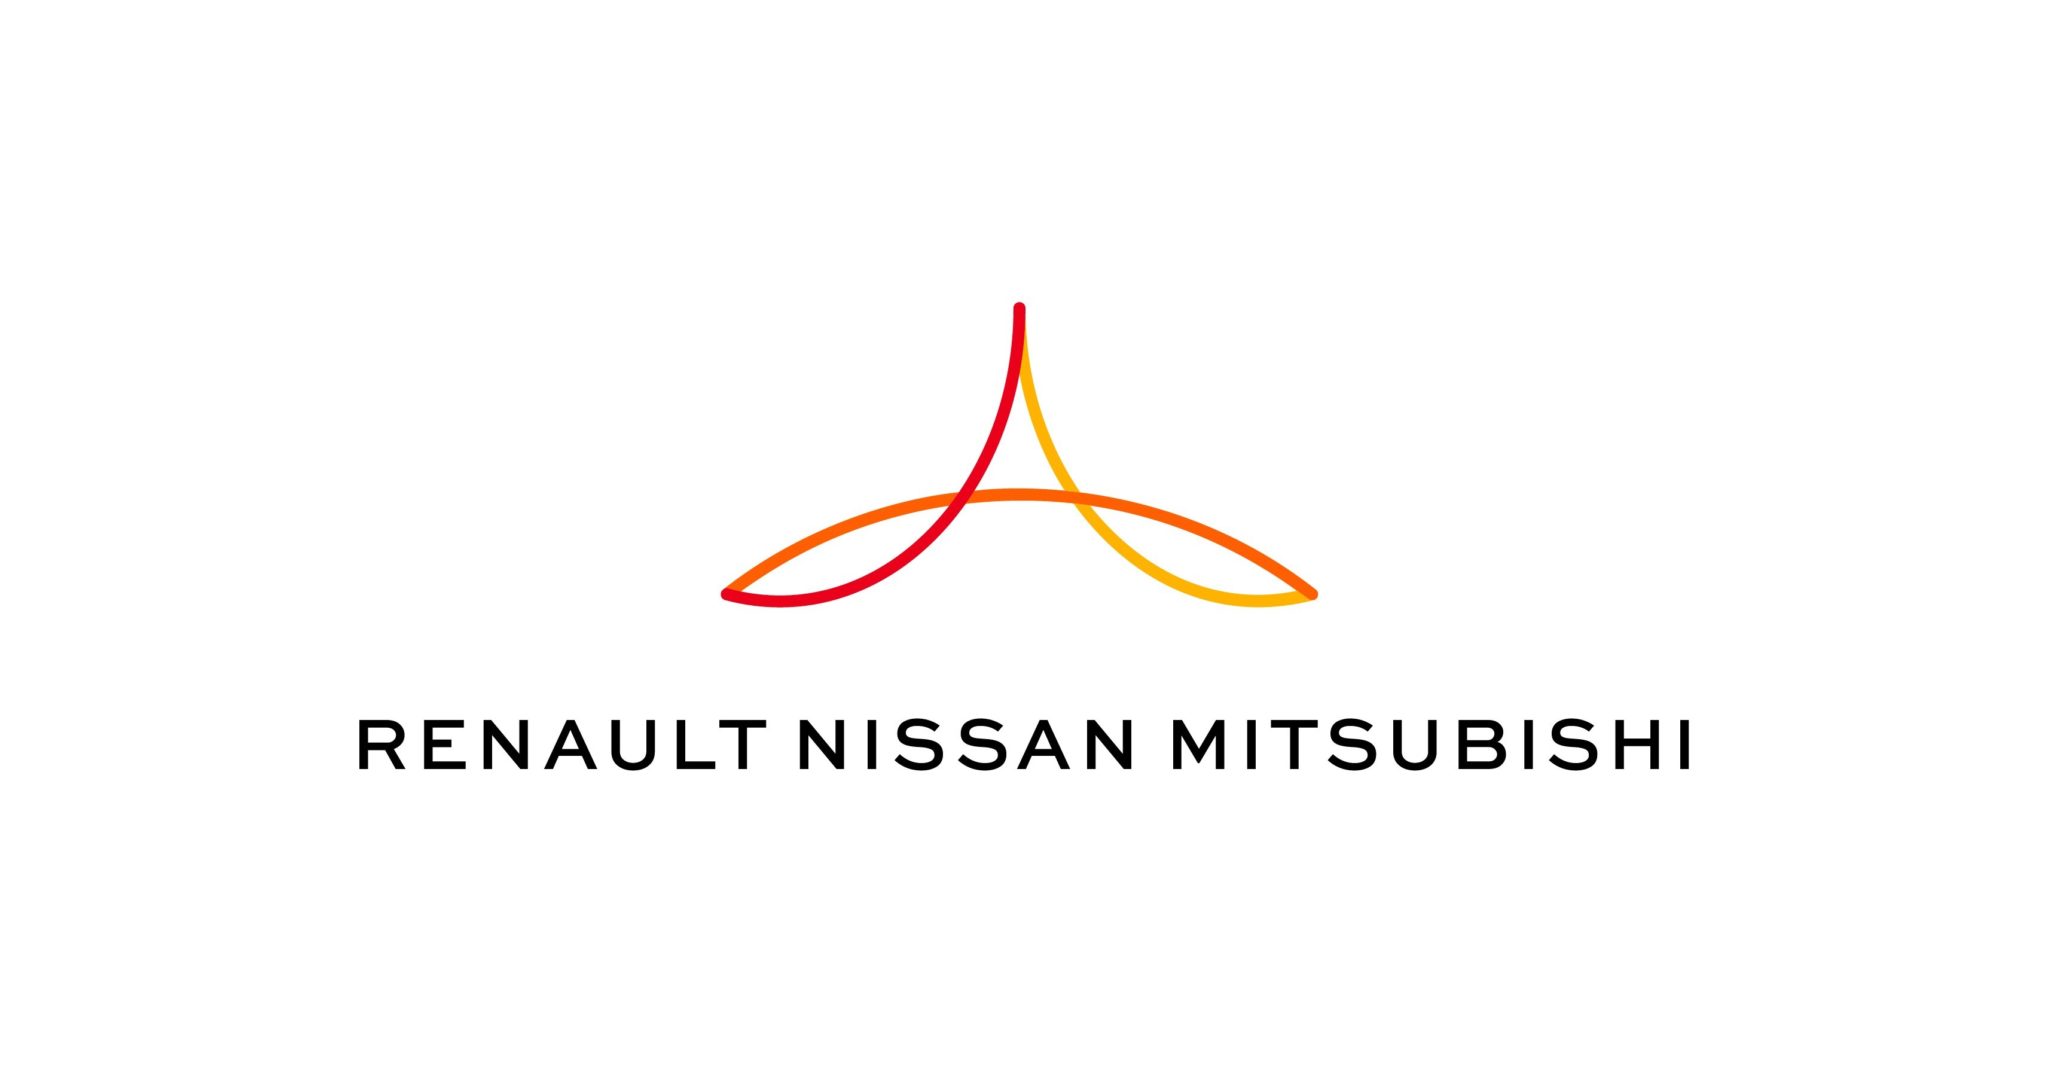 Αλλαγές στη Συμμαχία Renault - Nissan – Mitsubishi